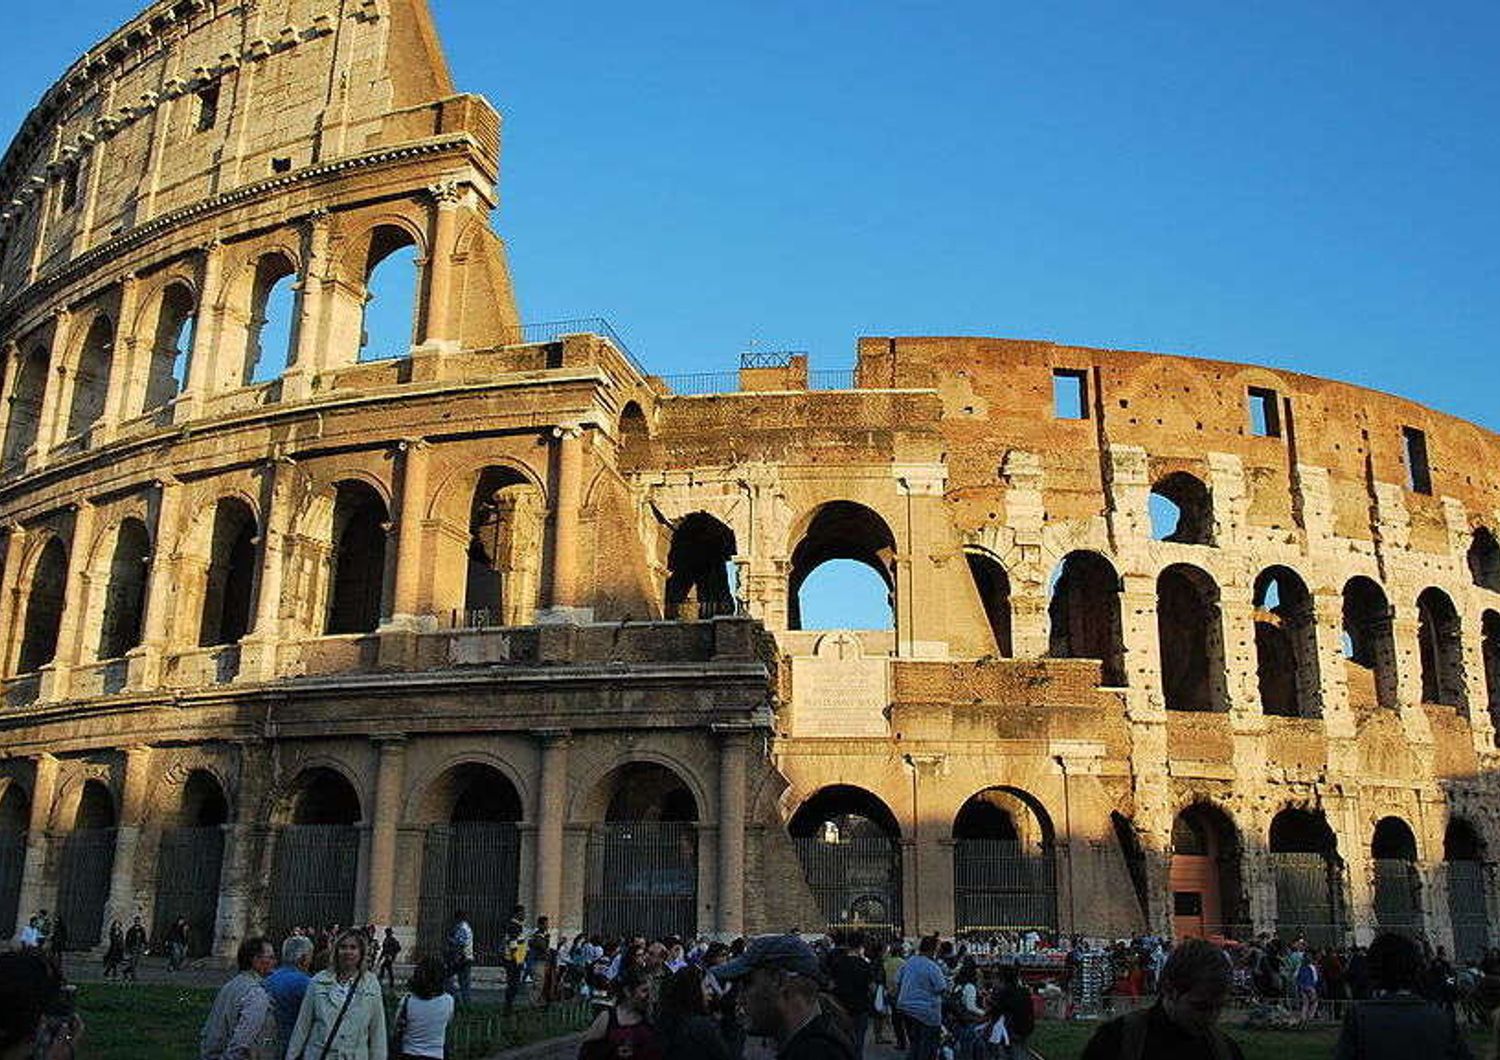 Colosseo: turista russo incide enorme 'k' su muro, arrestato per "danneggiamento aggravato"